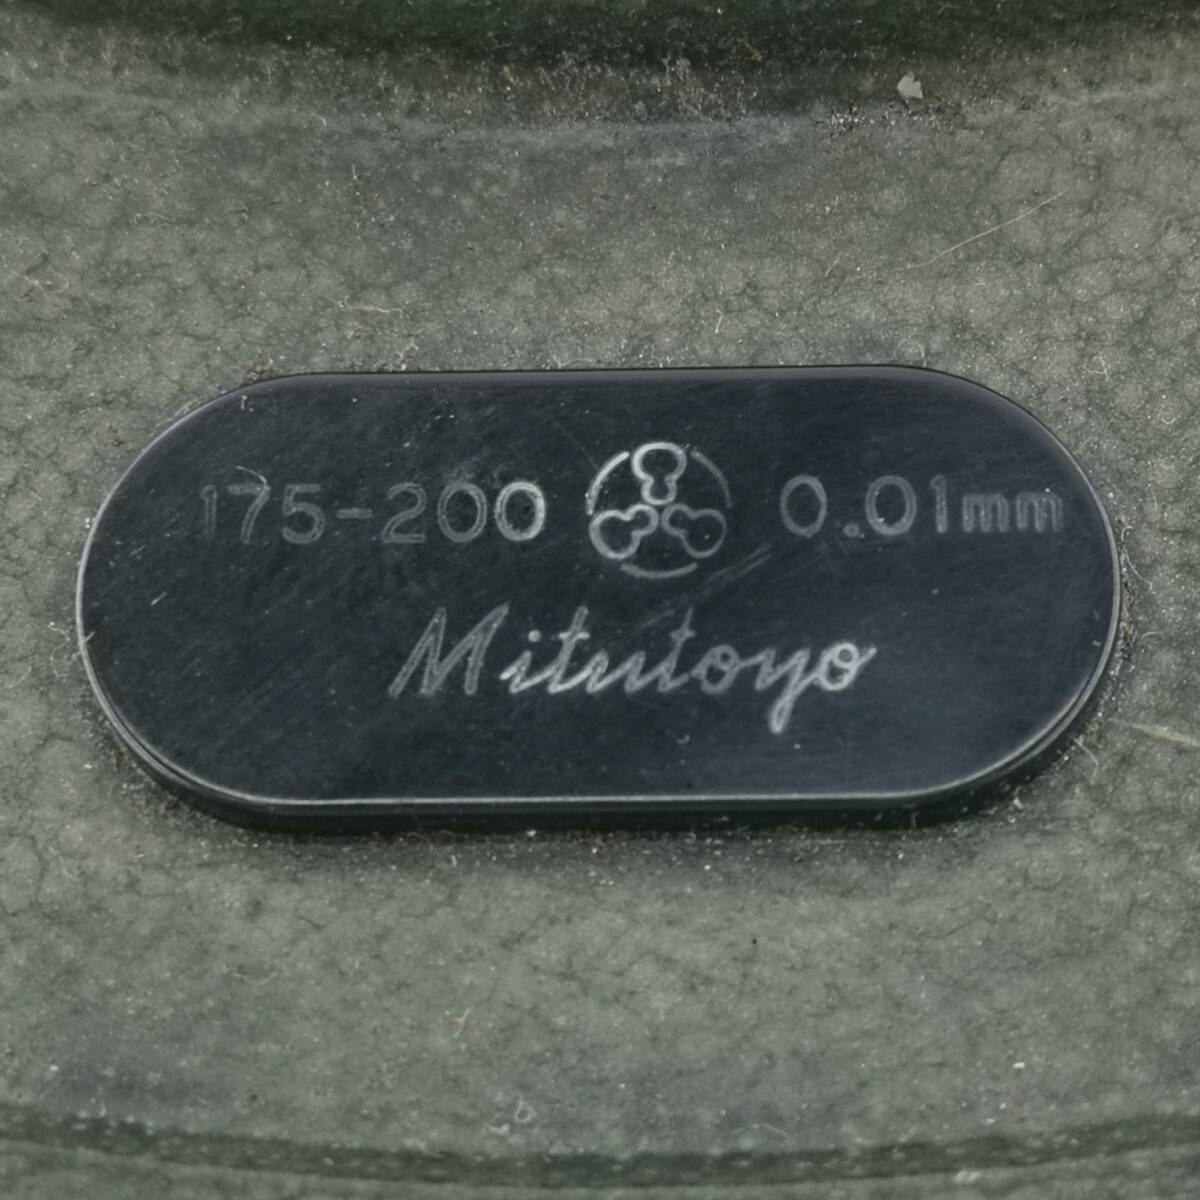 送料無料 MITUTOYO ミツトヨ 標準外側マイクロメータ OM-200 測定範囲:175-200mm 最小表示:0.01mm 測定器 測定器具#12675_画像5